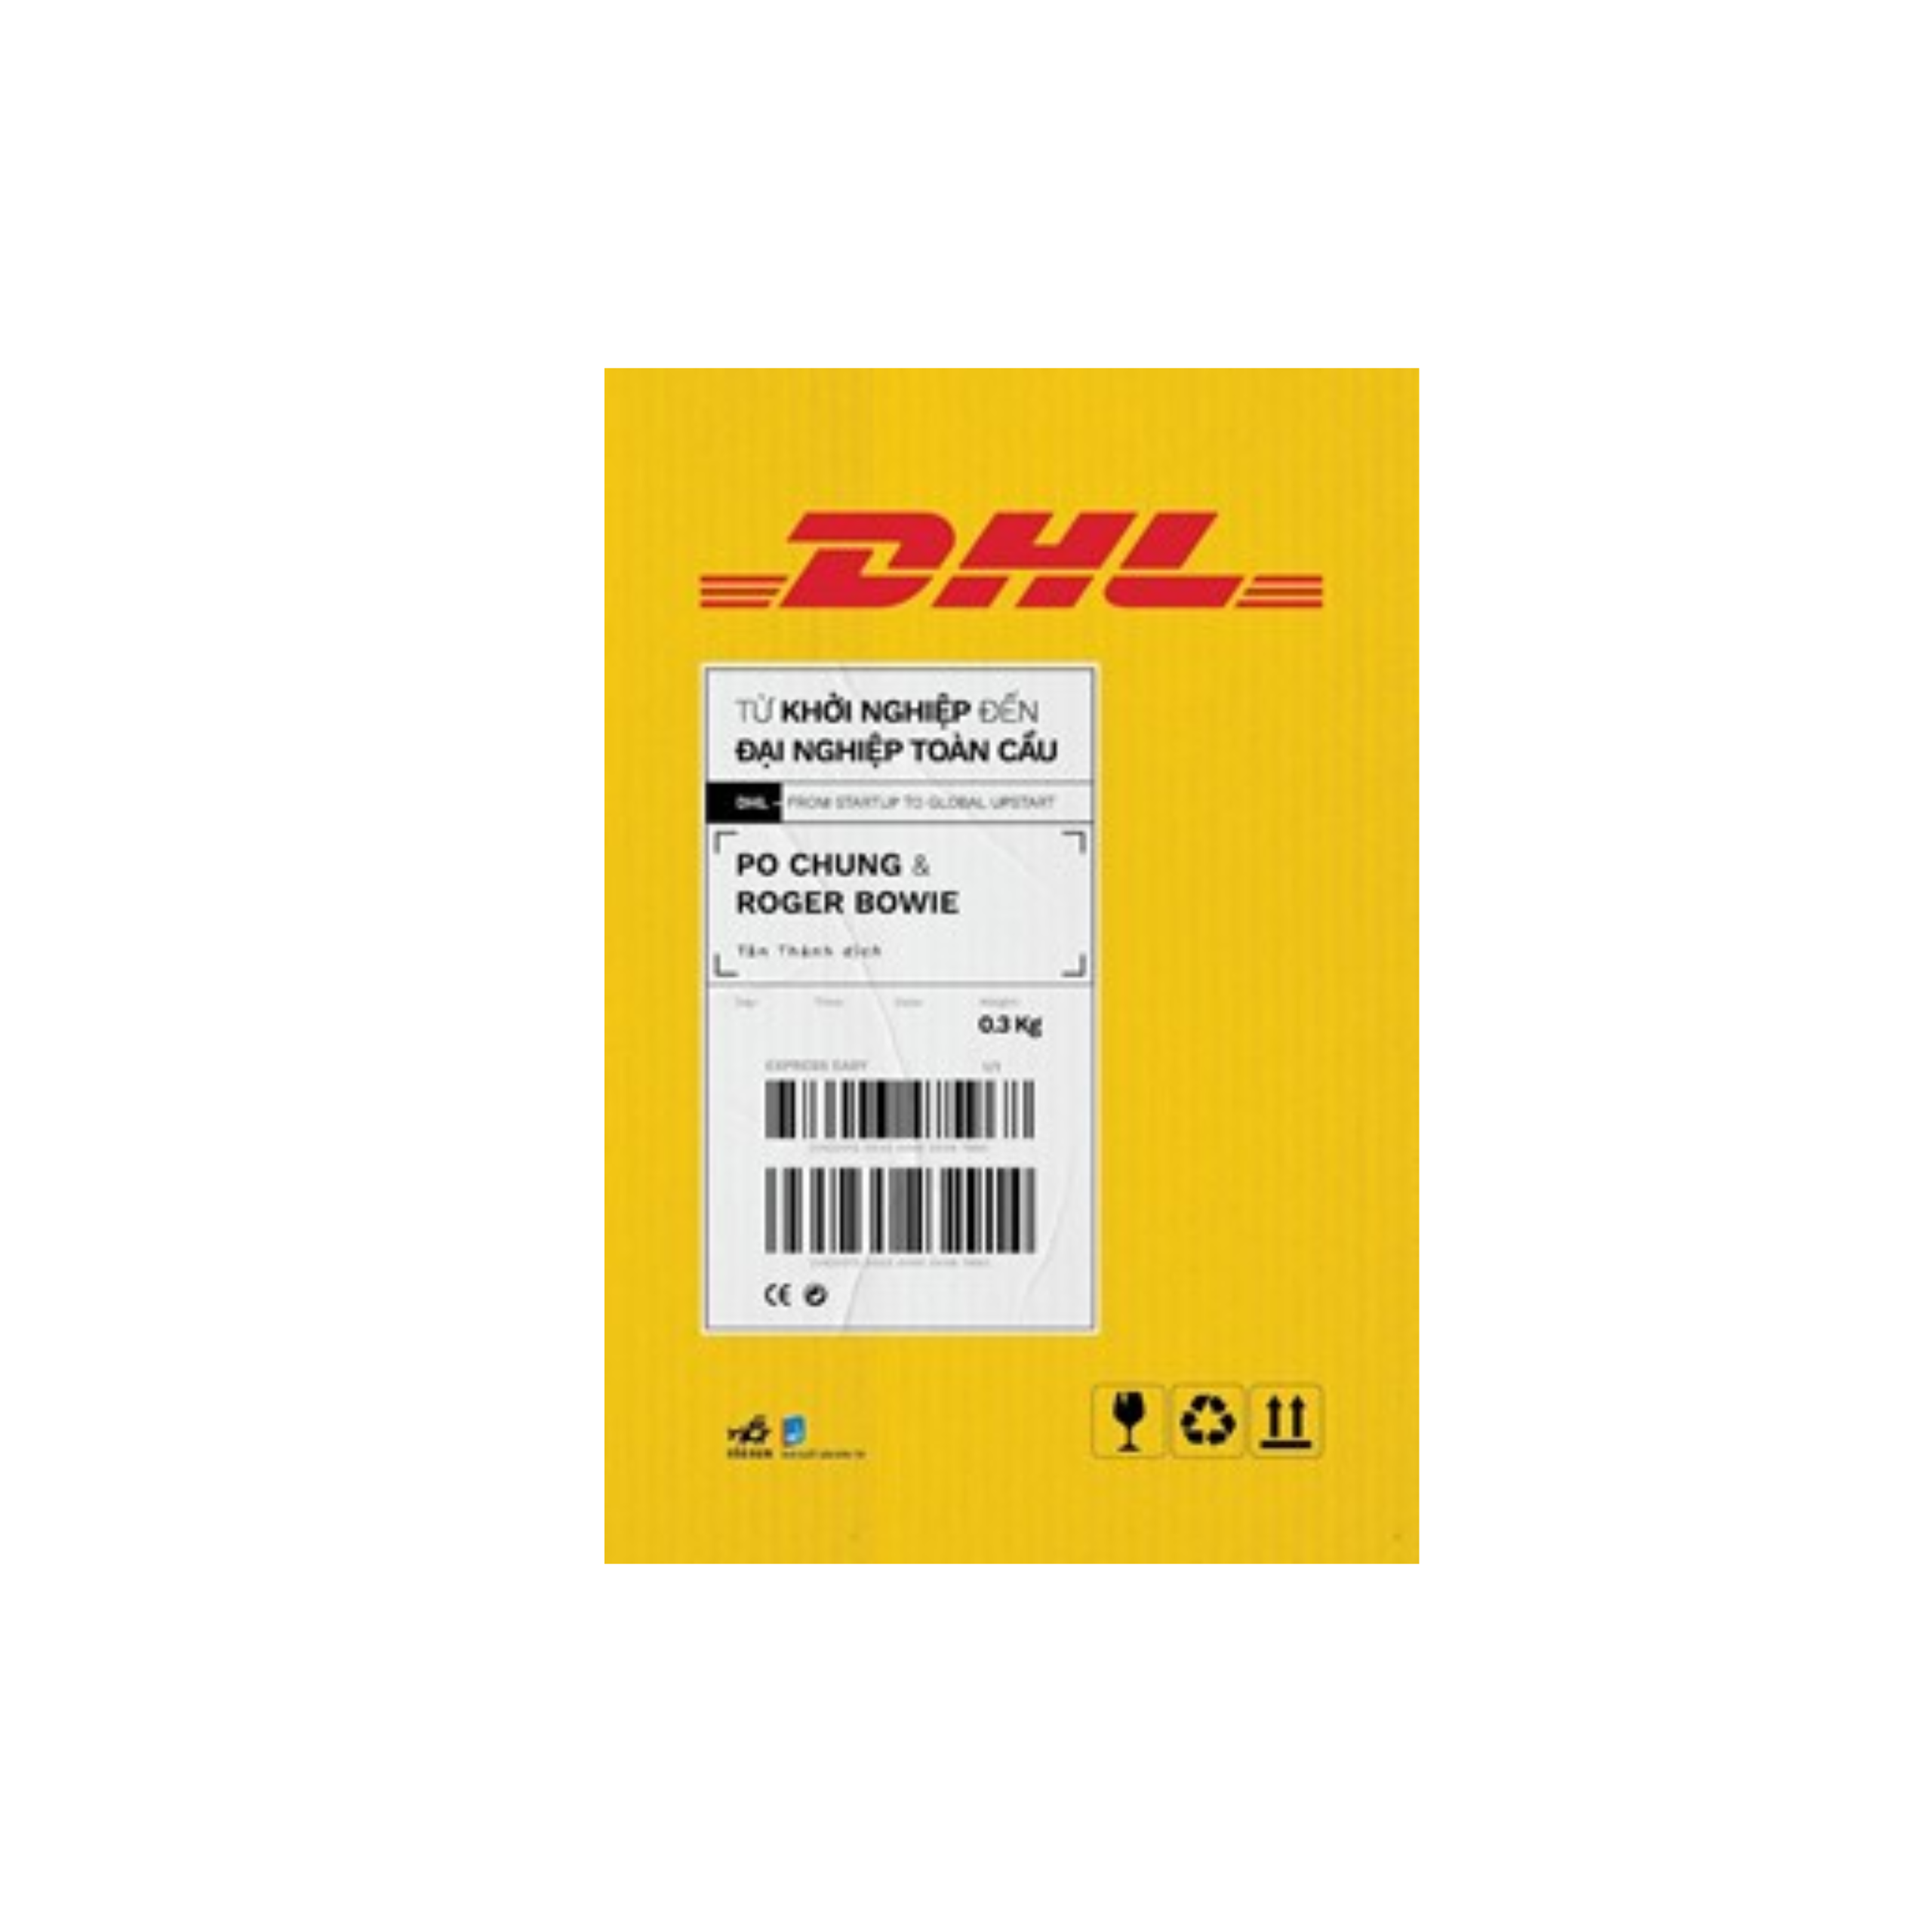 DHL -  Từ Khởi Nghiệp Đến Đại Nghiệp Toàn Cầu